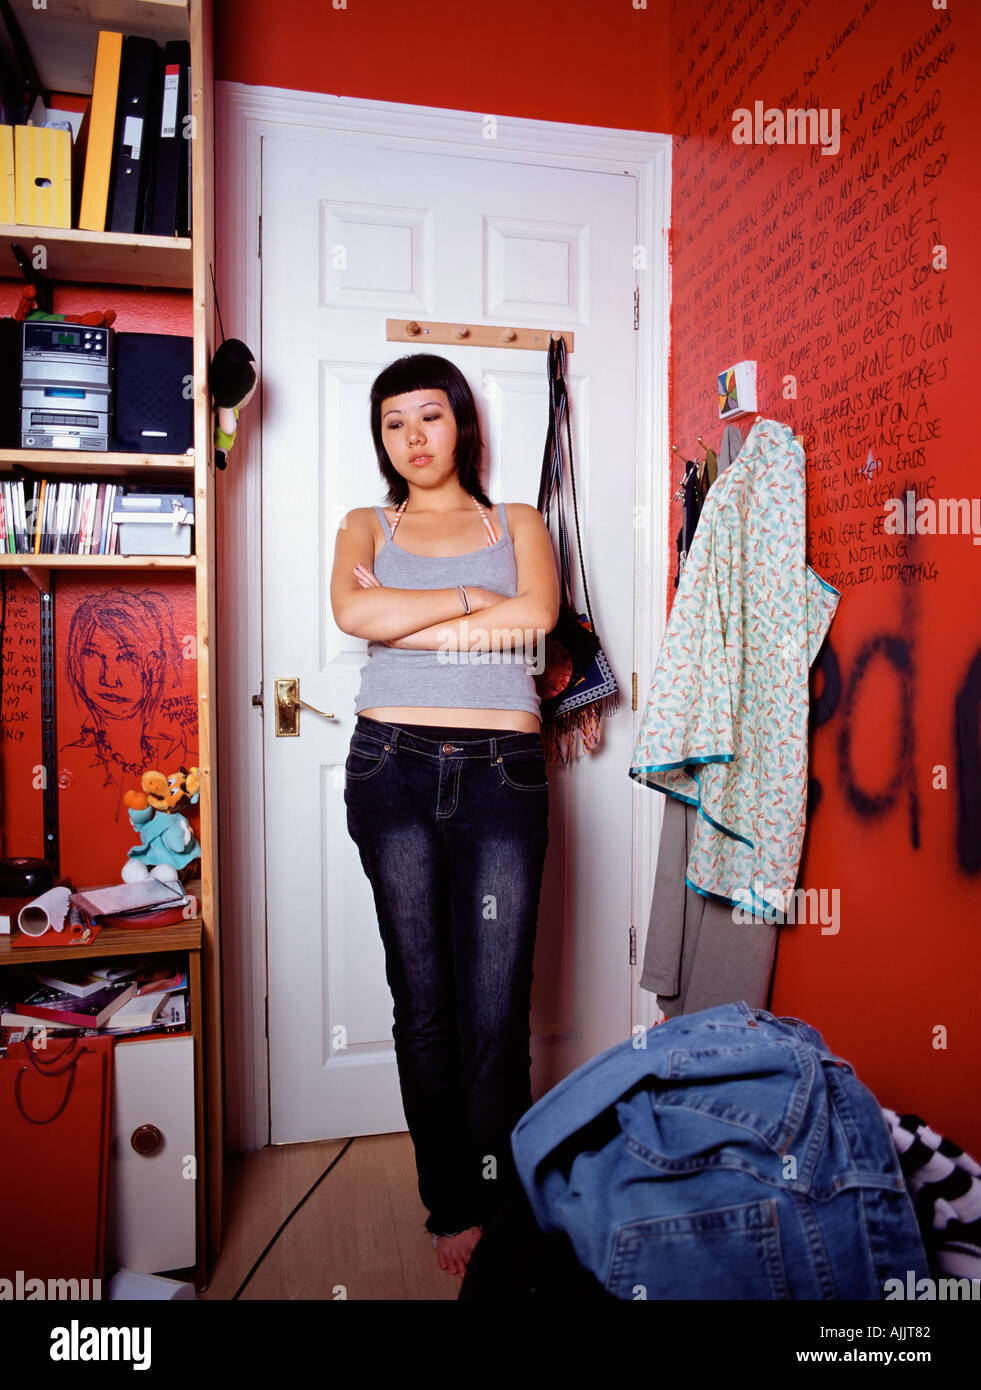 Hostile teenage girl in bedroom Stock Photo